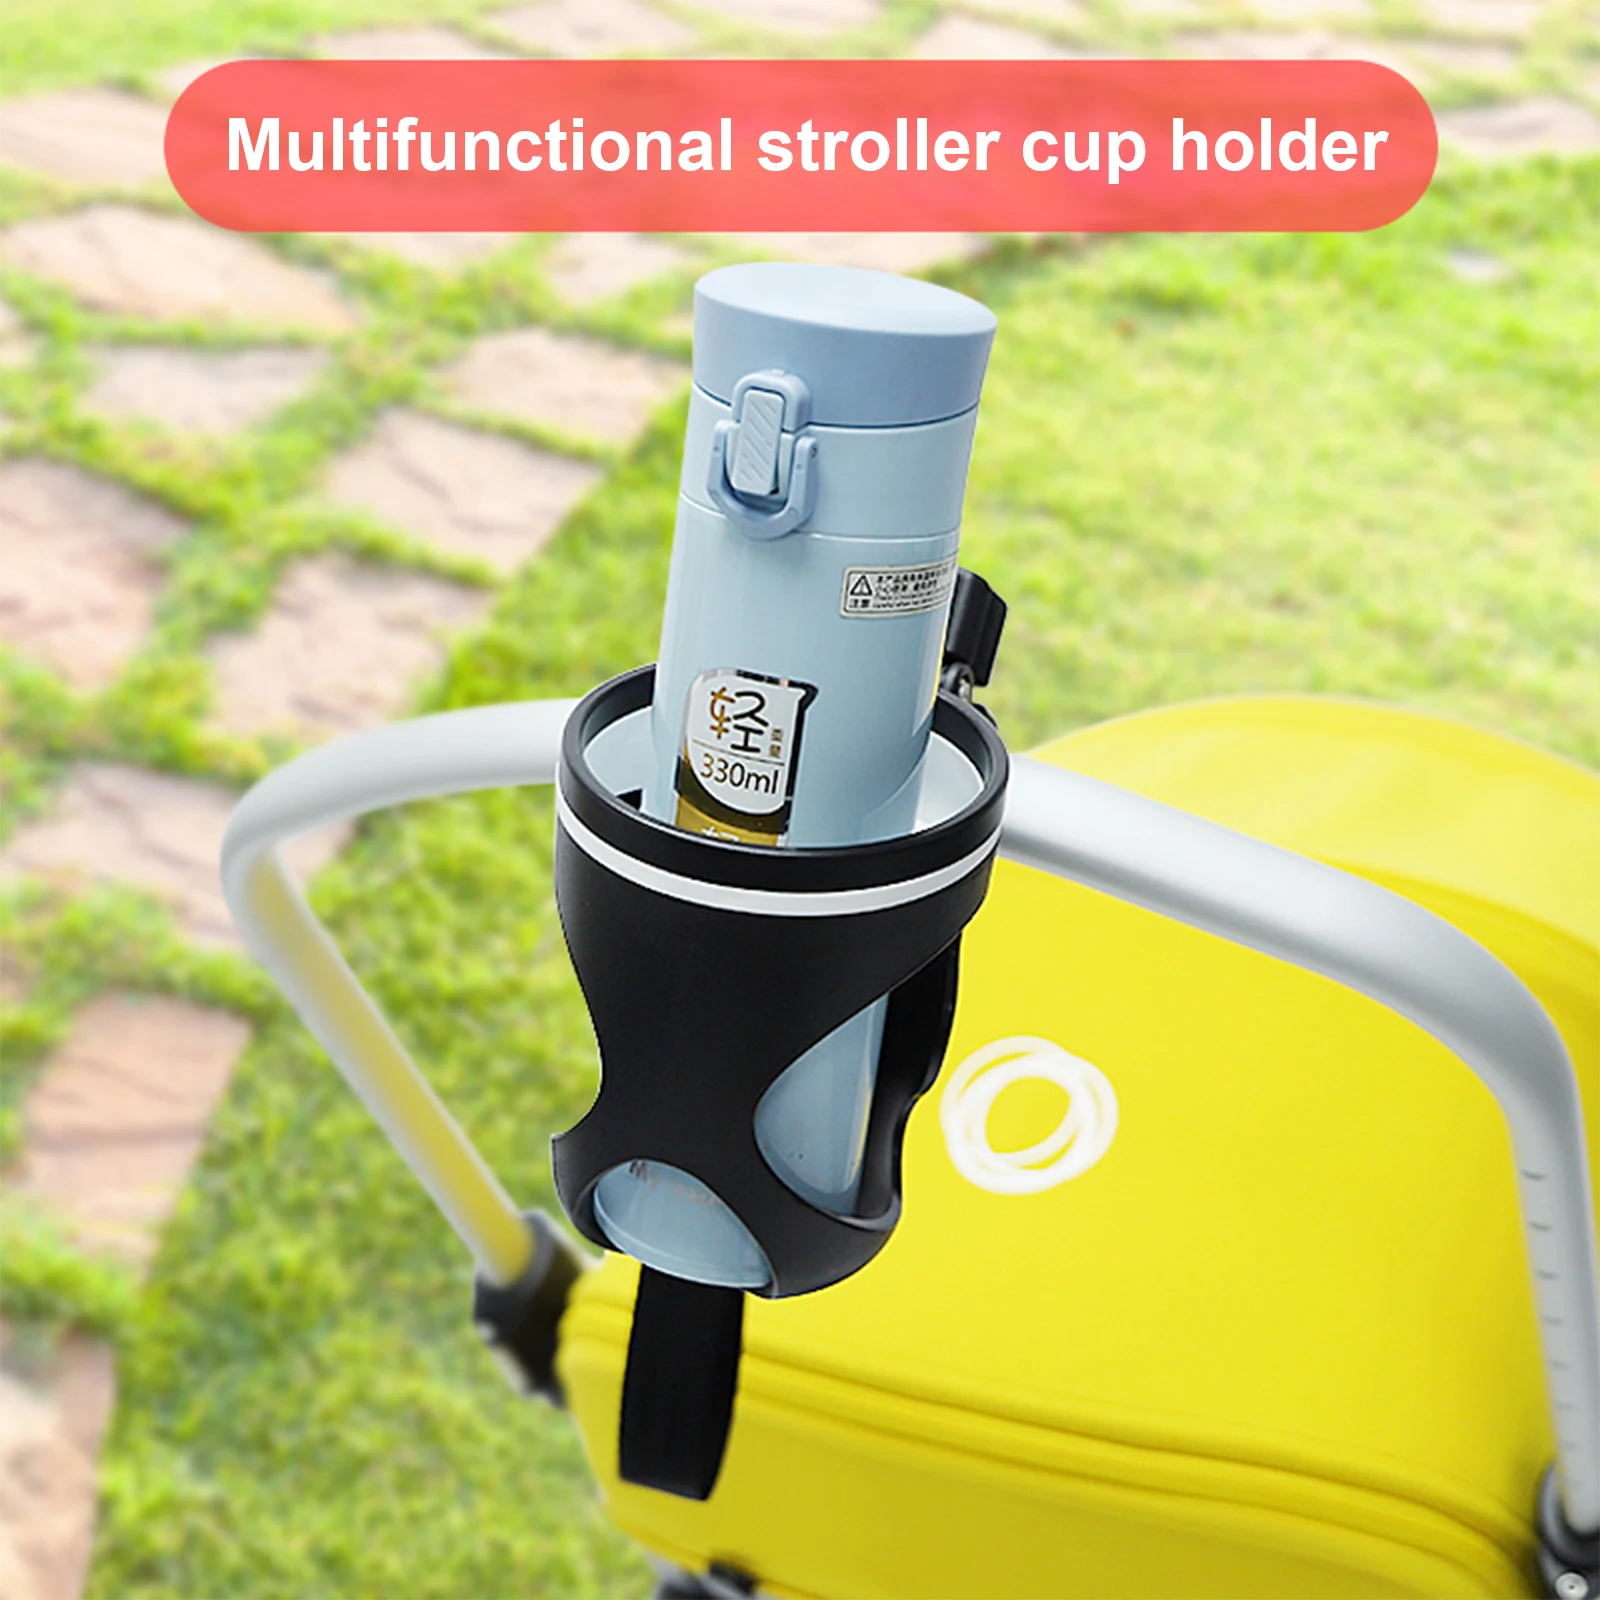 

Держатель для бутылки/чашки, для крепления на коляске, универсальный с возможностью поворота на 360 градусов